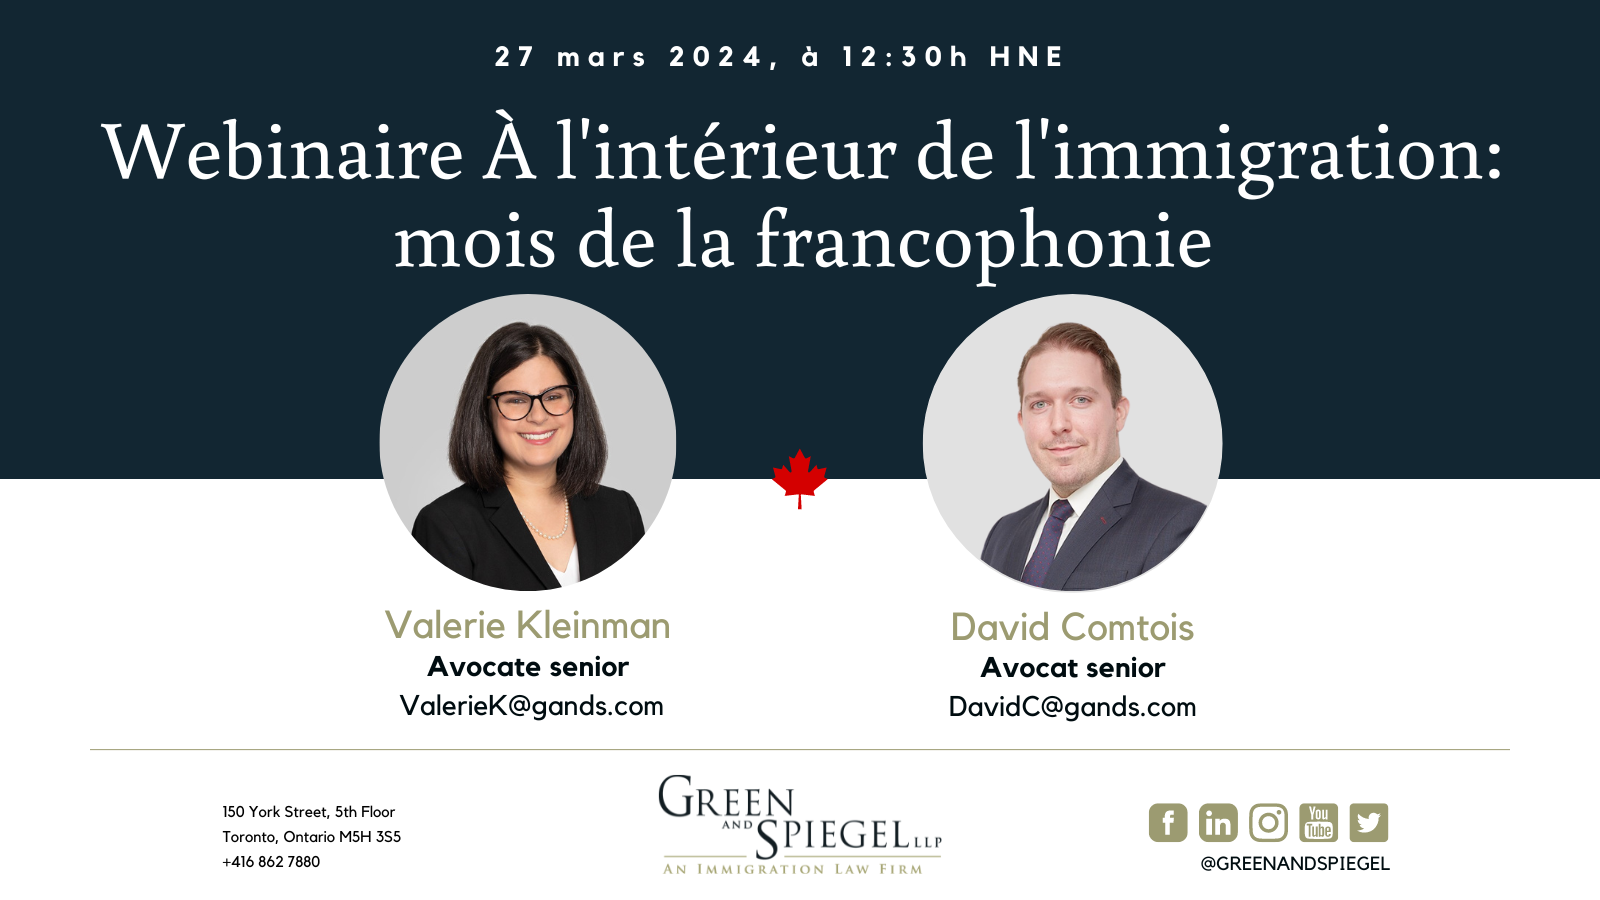 Webinaire À l'intérieur de l'immigration: mois de la francophonie